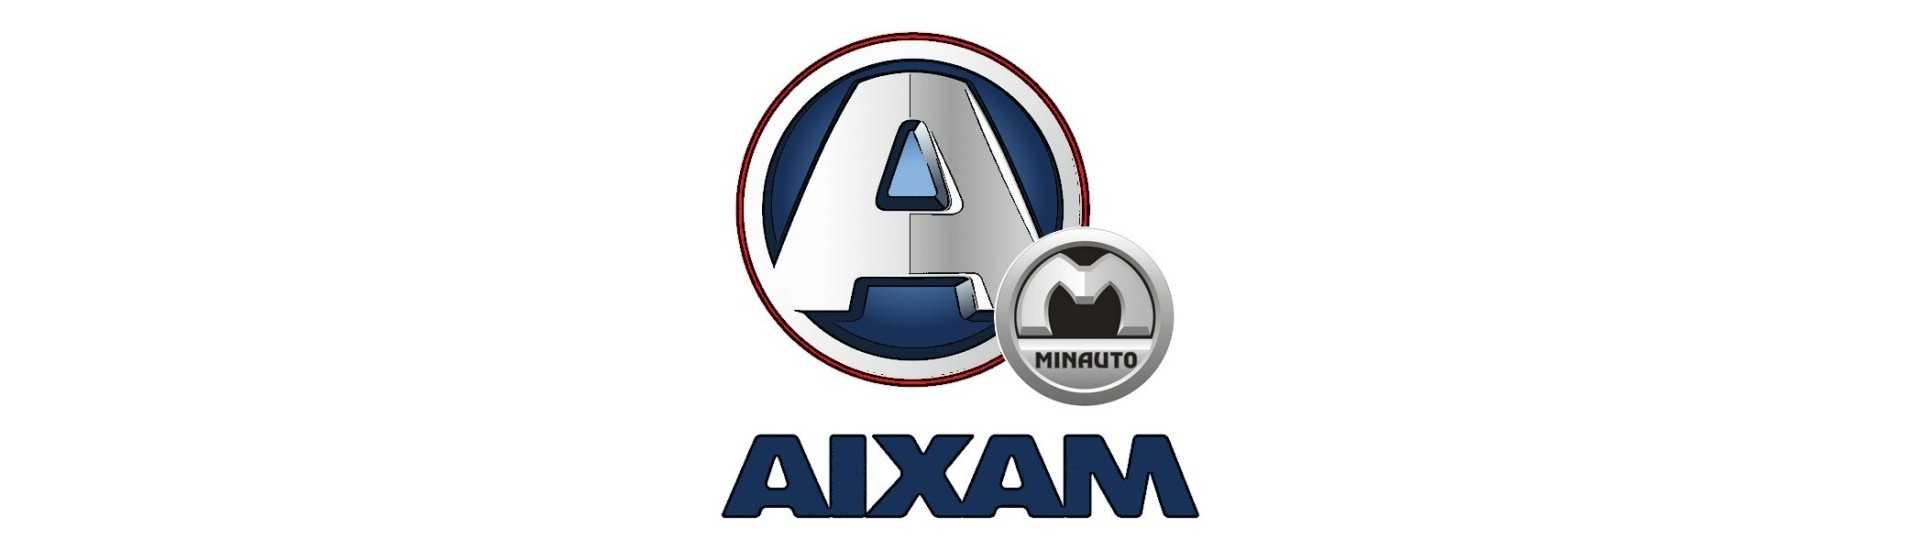 Stödhjul till bästa för bil utan körkort Aixam Minauto